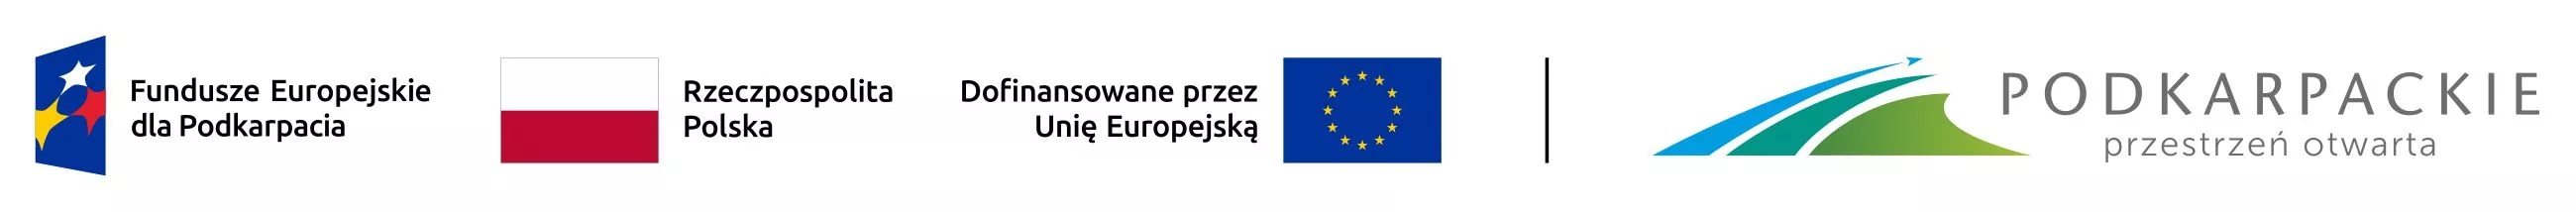 Logotypy Fundusze Europejskie dla Podkarpacia